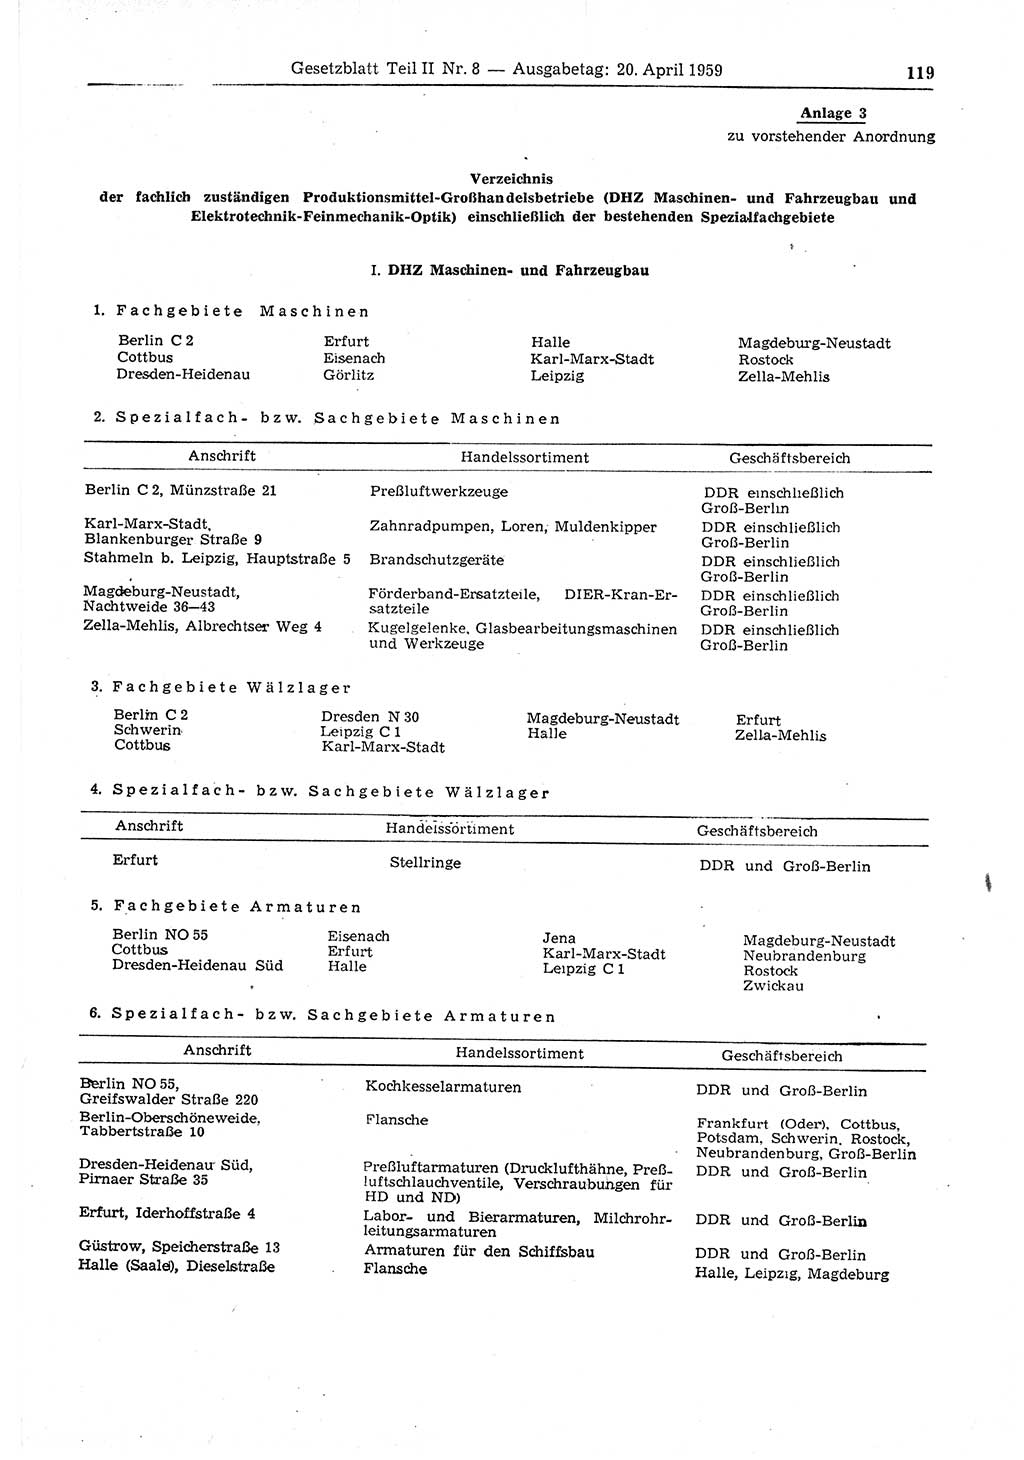 Gesetzblatt (GBl.) der Deutschen Demokratischen Republik (DDR) Teil ⅠⅠ 1959, Seite 119 (GBl. DDR ⅠⅠ 1959, S. 119)